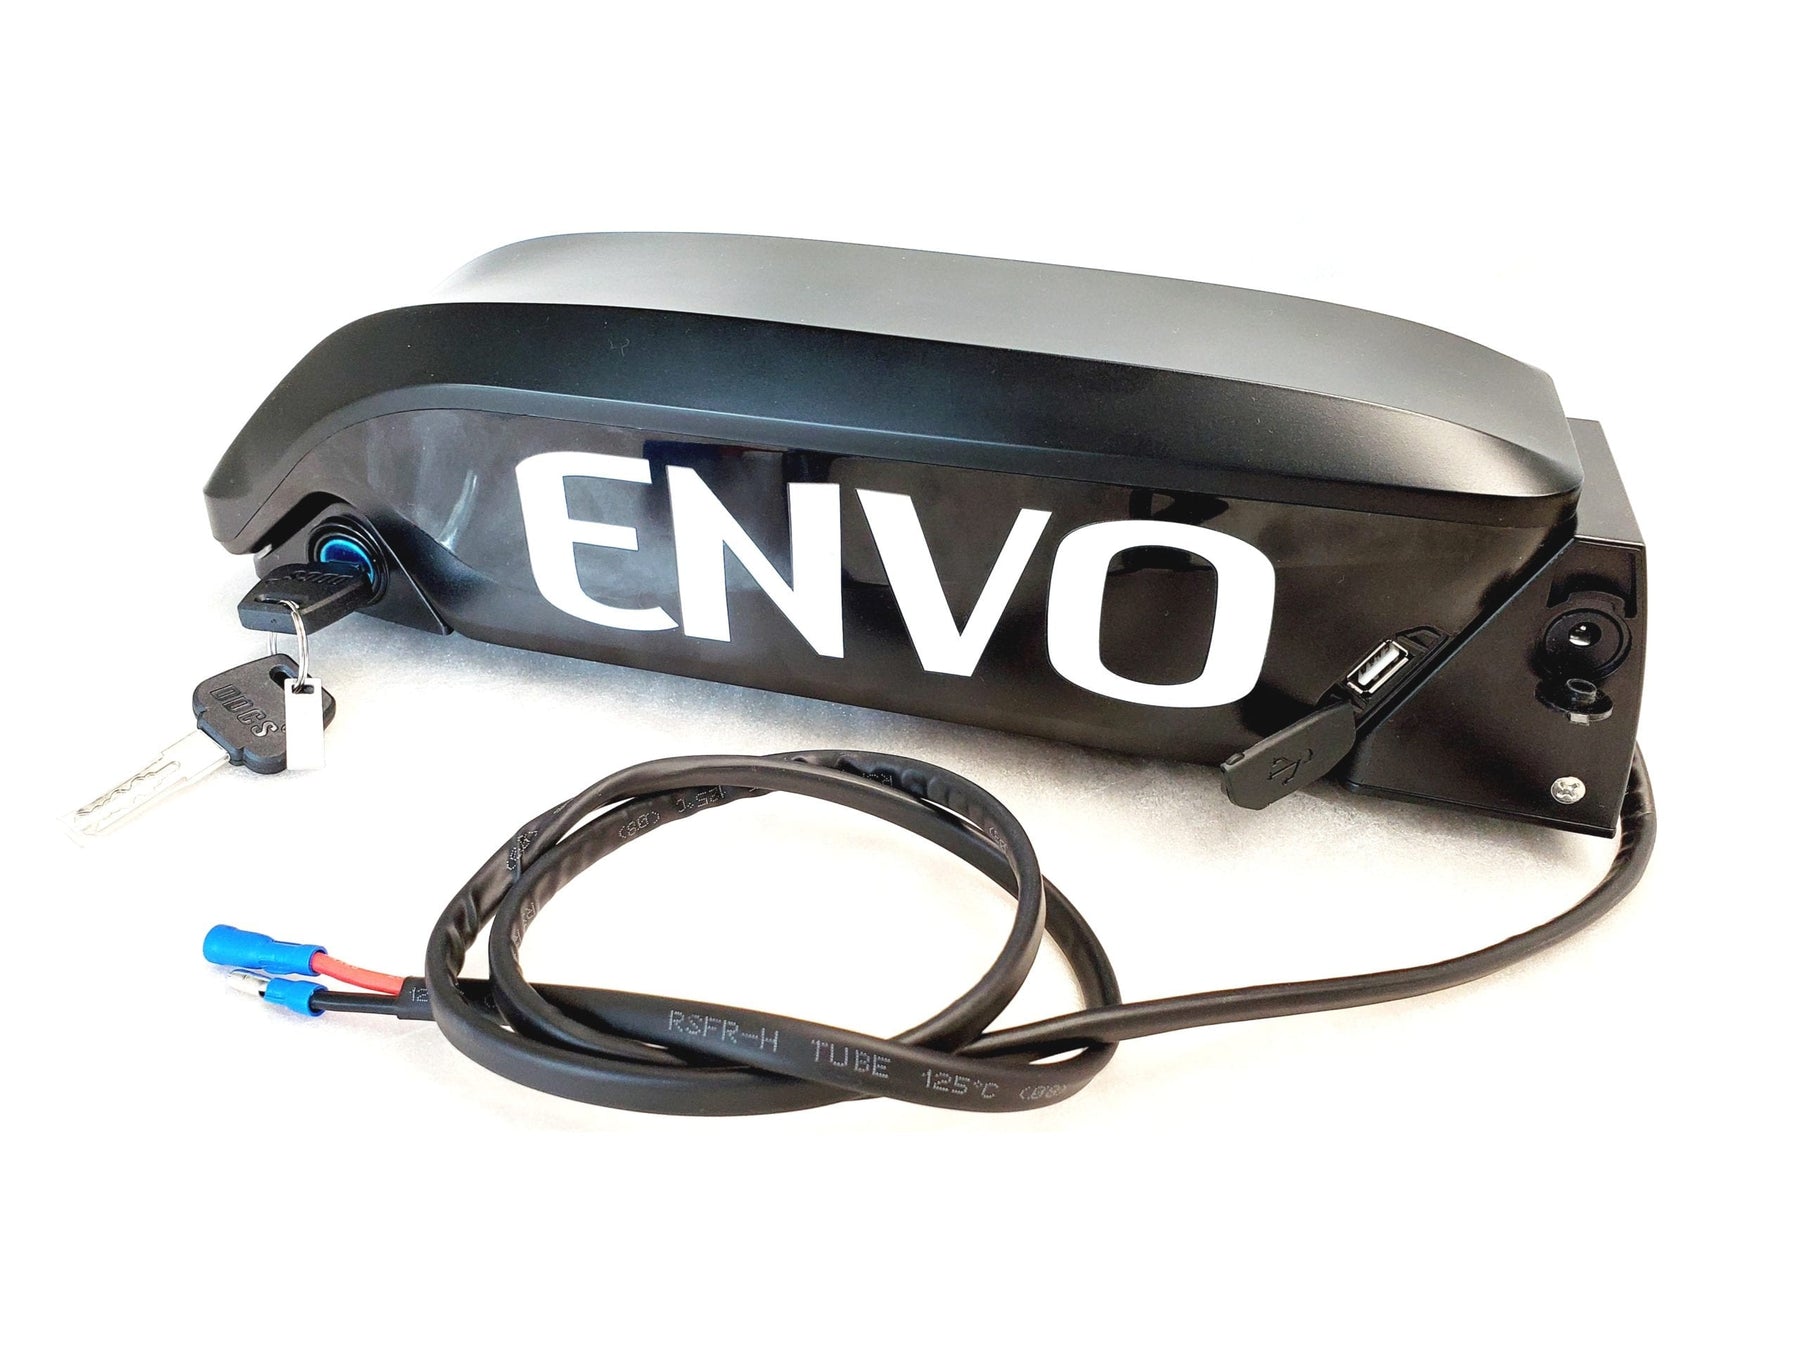 Bracket for Battery Support for ENVO Battery